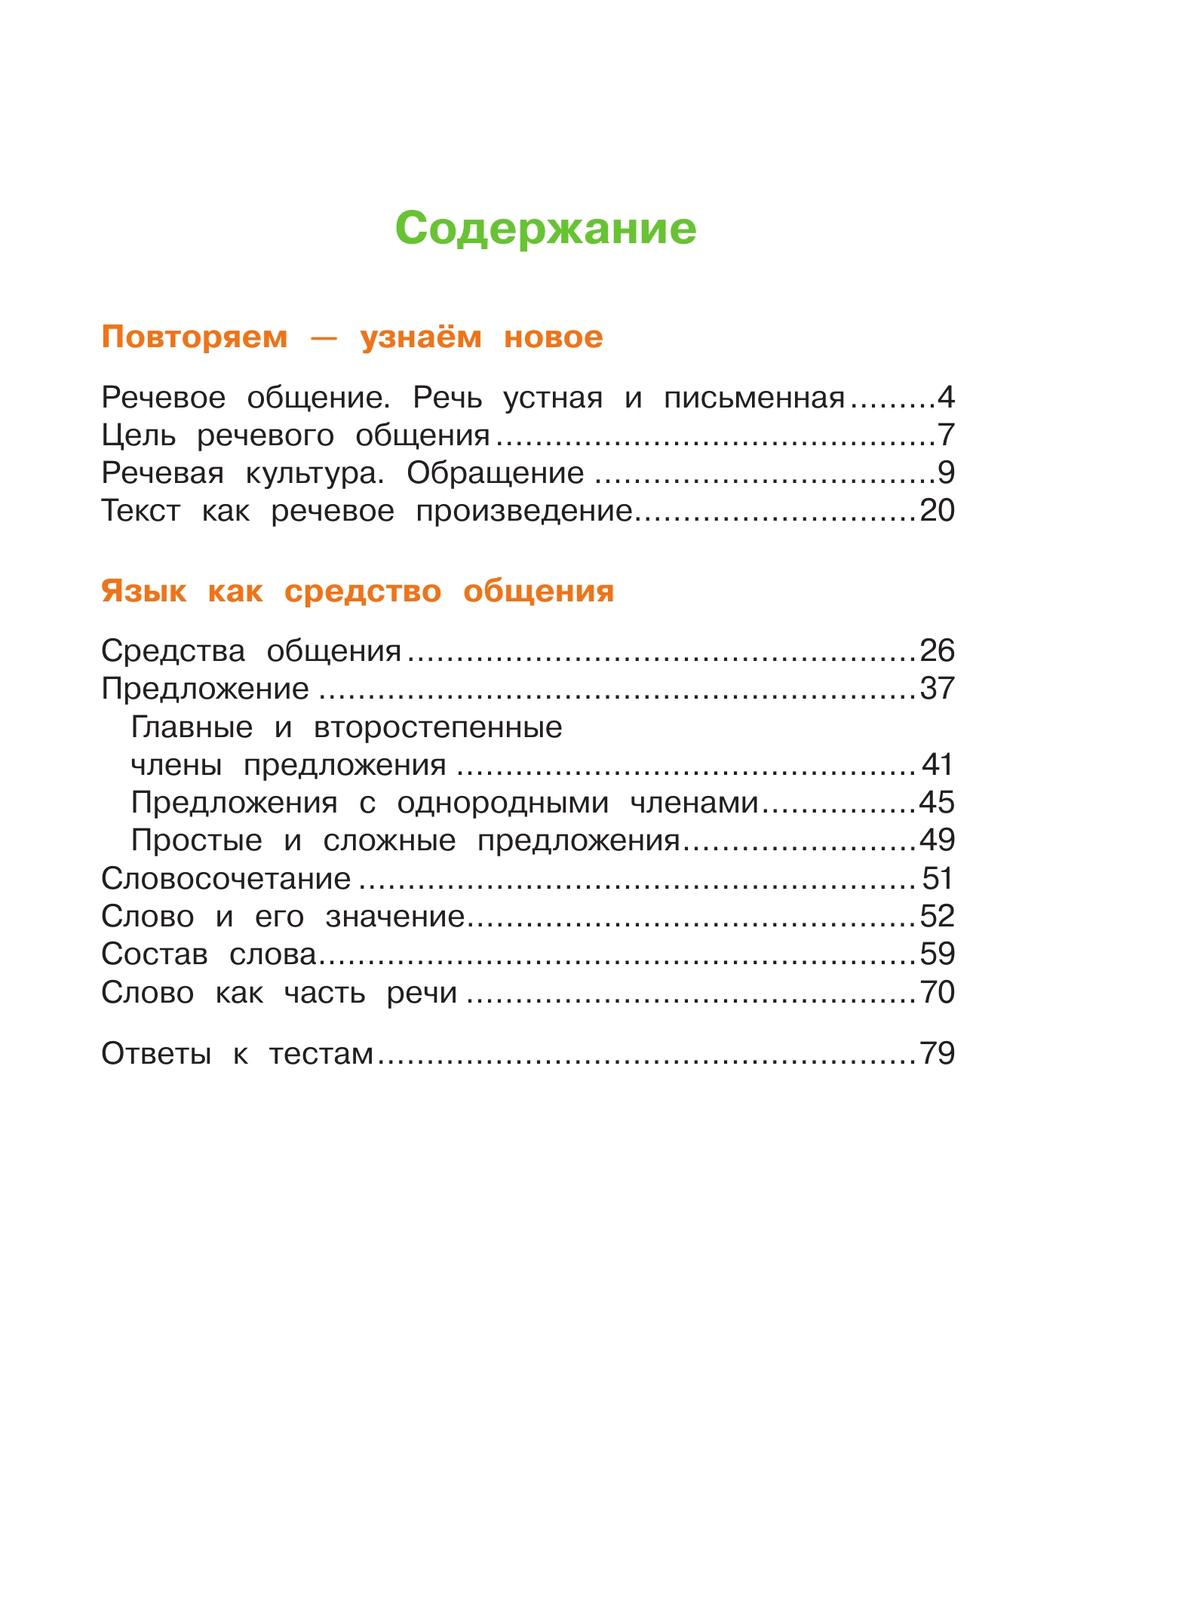 Русский язык. Рабочая тетрадь. 4 класс. В 2 частях. Часть 1. 7